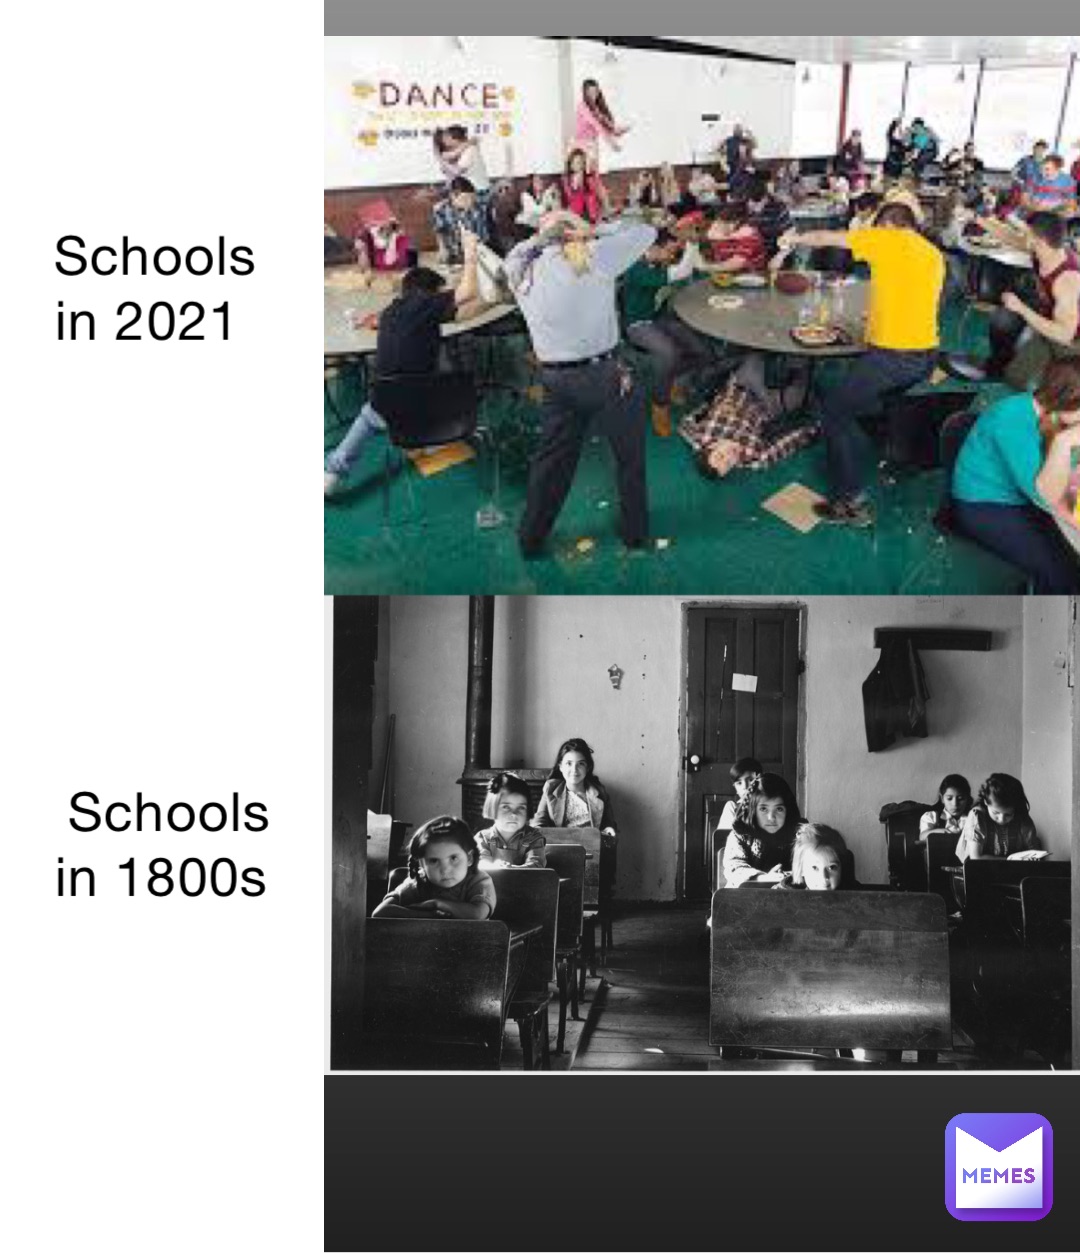 Schools in 1800s Schools in 2021